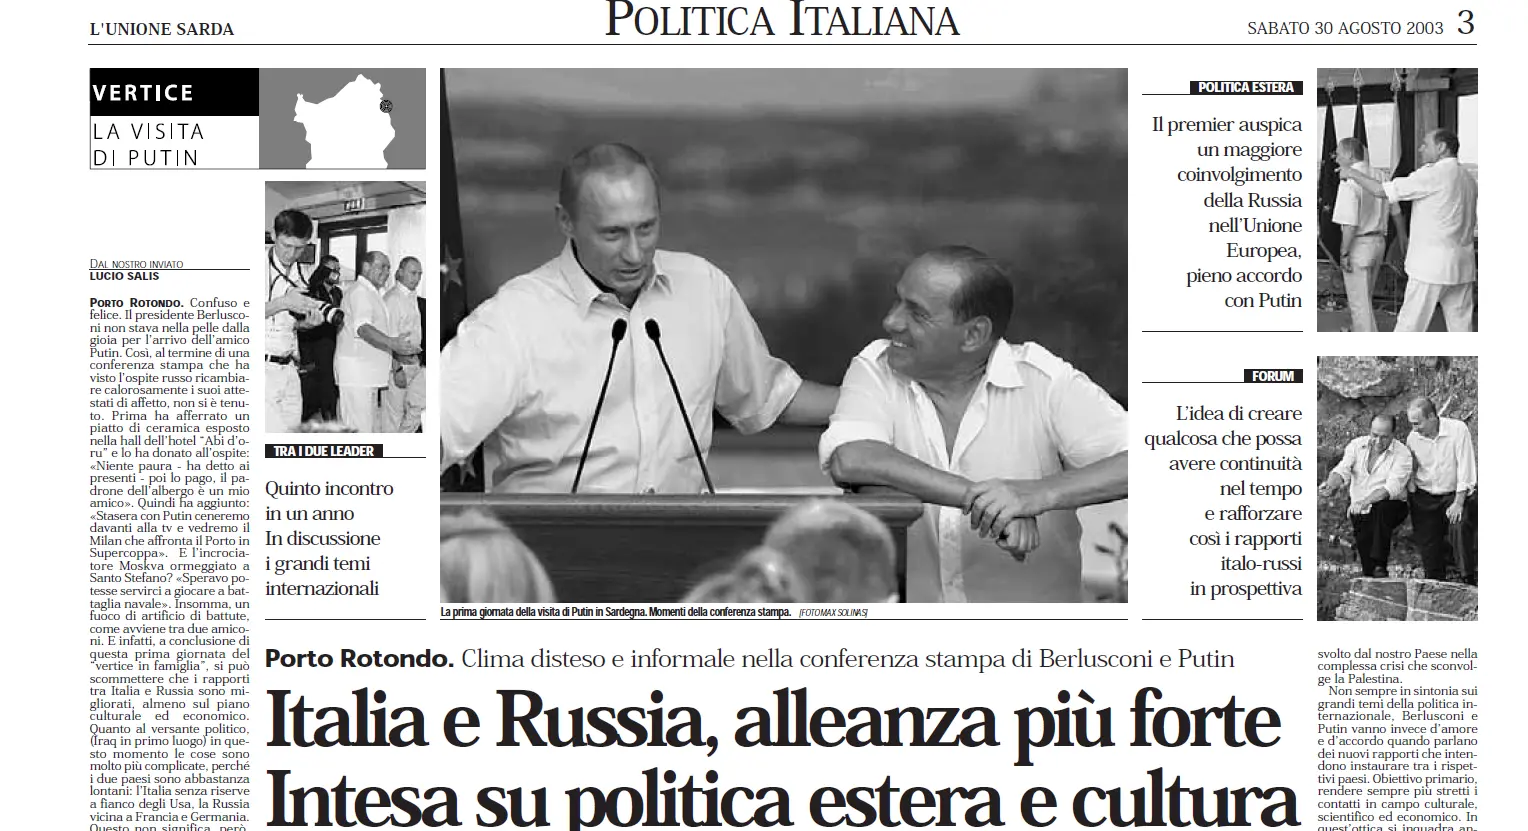 Putin e Silvio Berlusconi nel 2003 in Sardegna nelle pagine dell'Unione Sarda